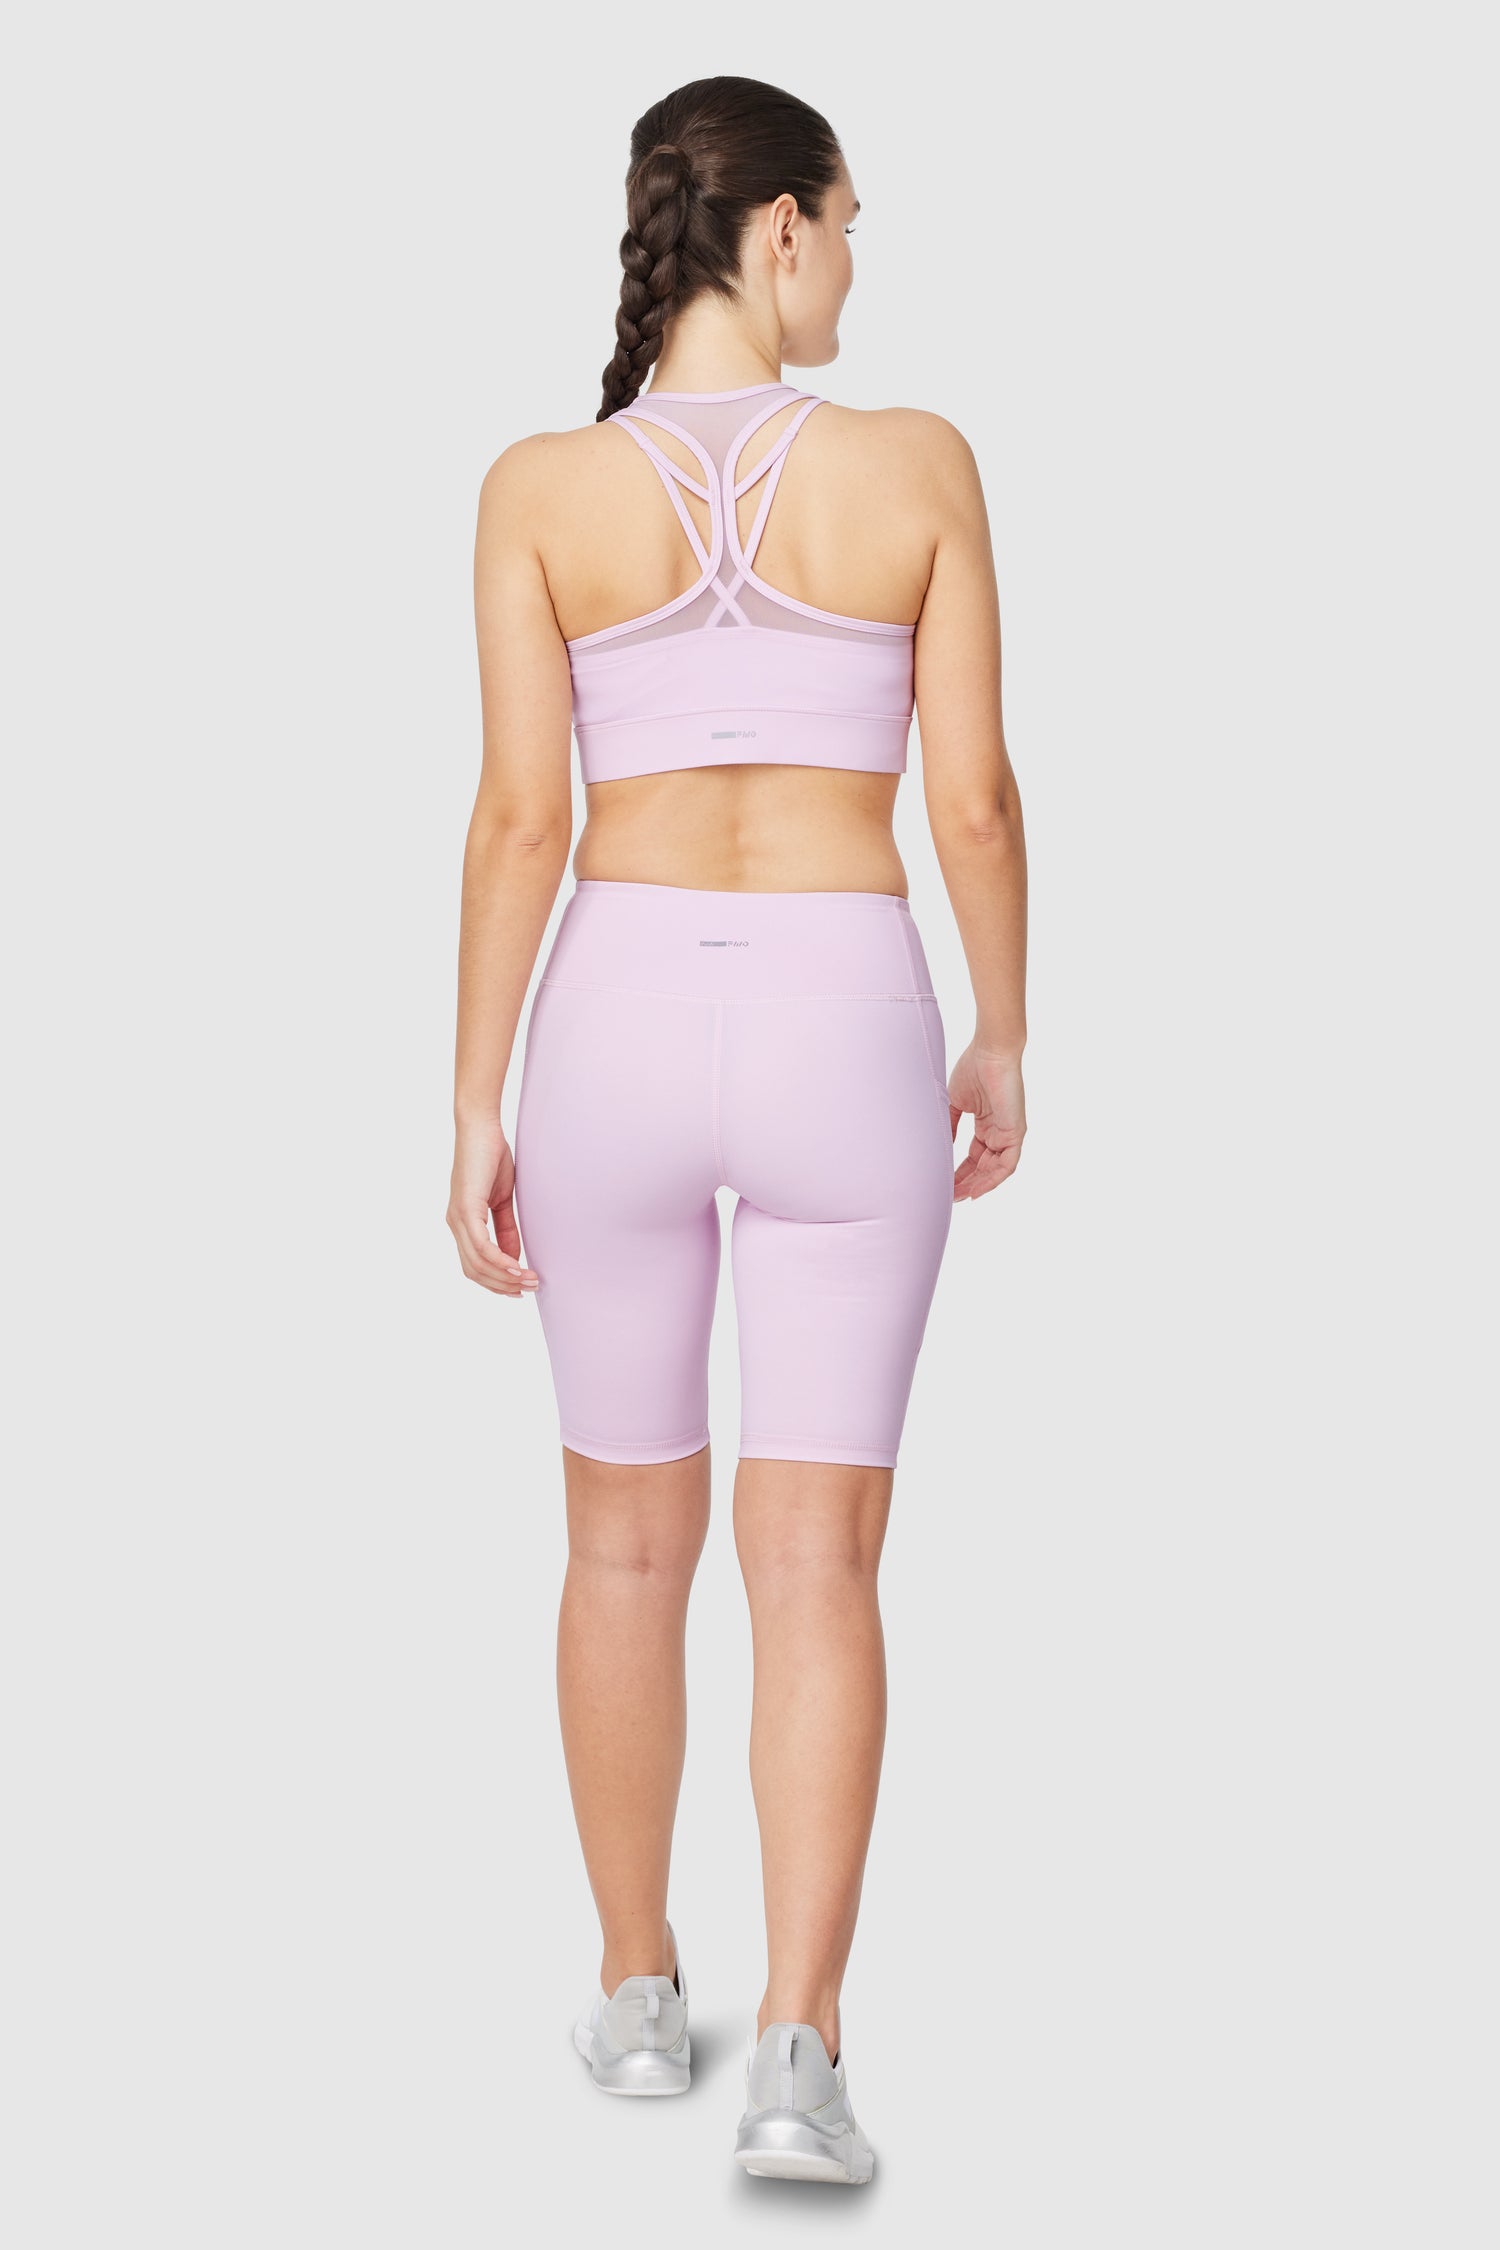 Women Front Buttons Elderly Underwear Wire-free Brassiere Front Closure  Vest Cotton Sport Bras – the best products in the Joom Geek online store